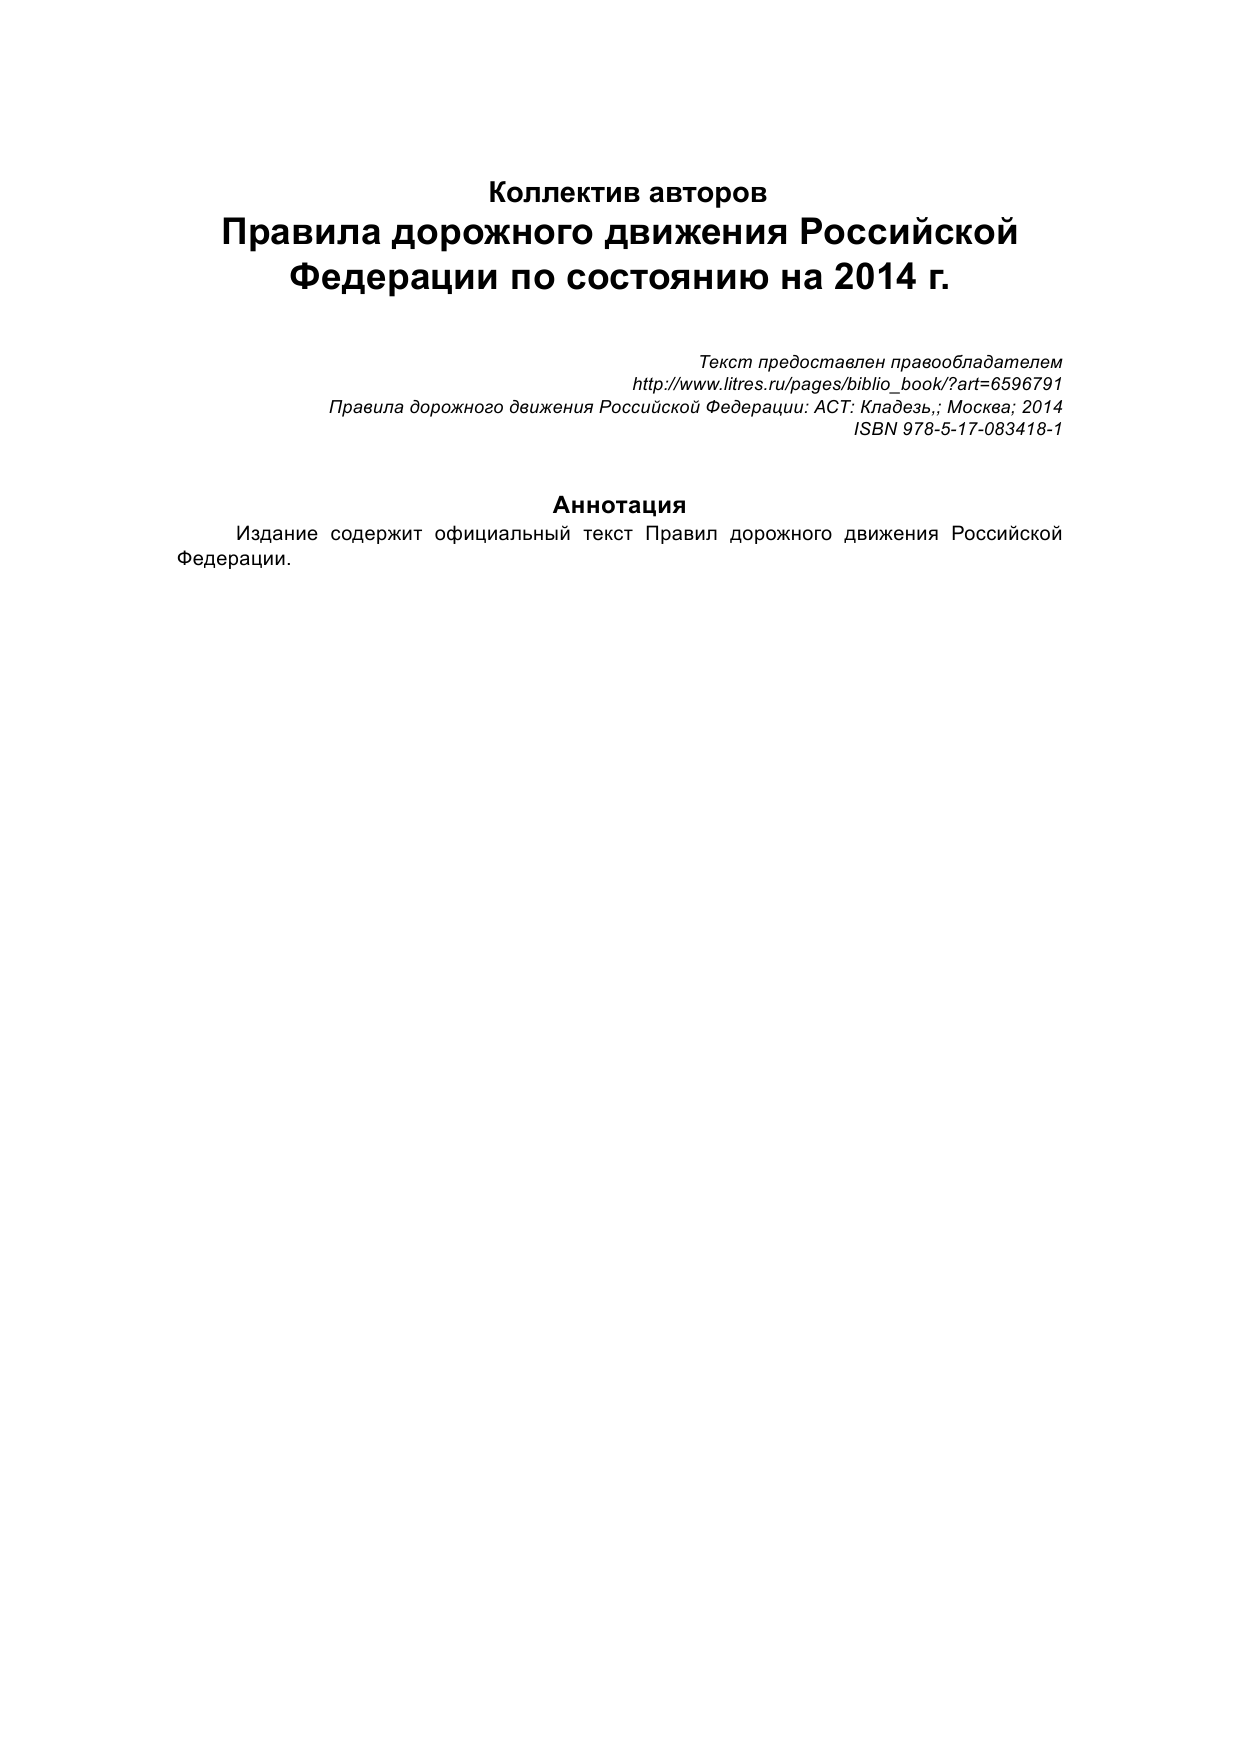  Правила дорожного движения Российской Федерации по состоянию на 2014 г. - страница 2